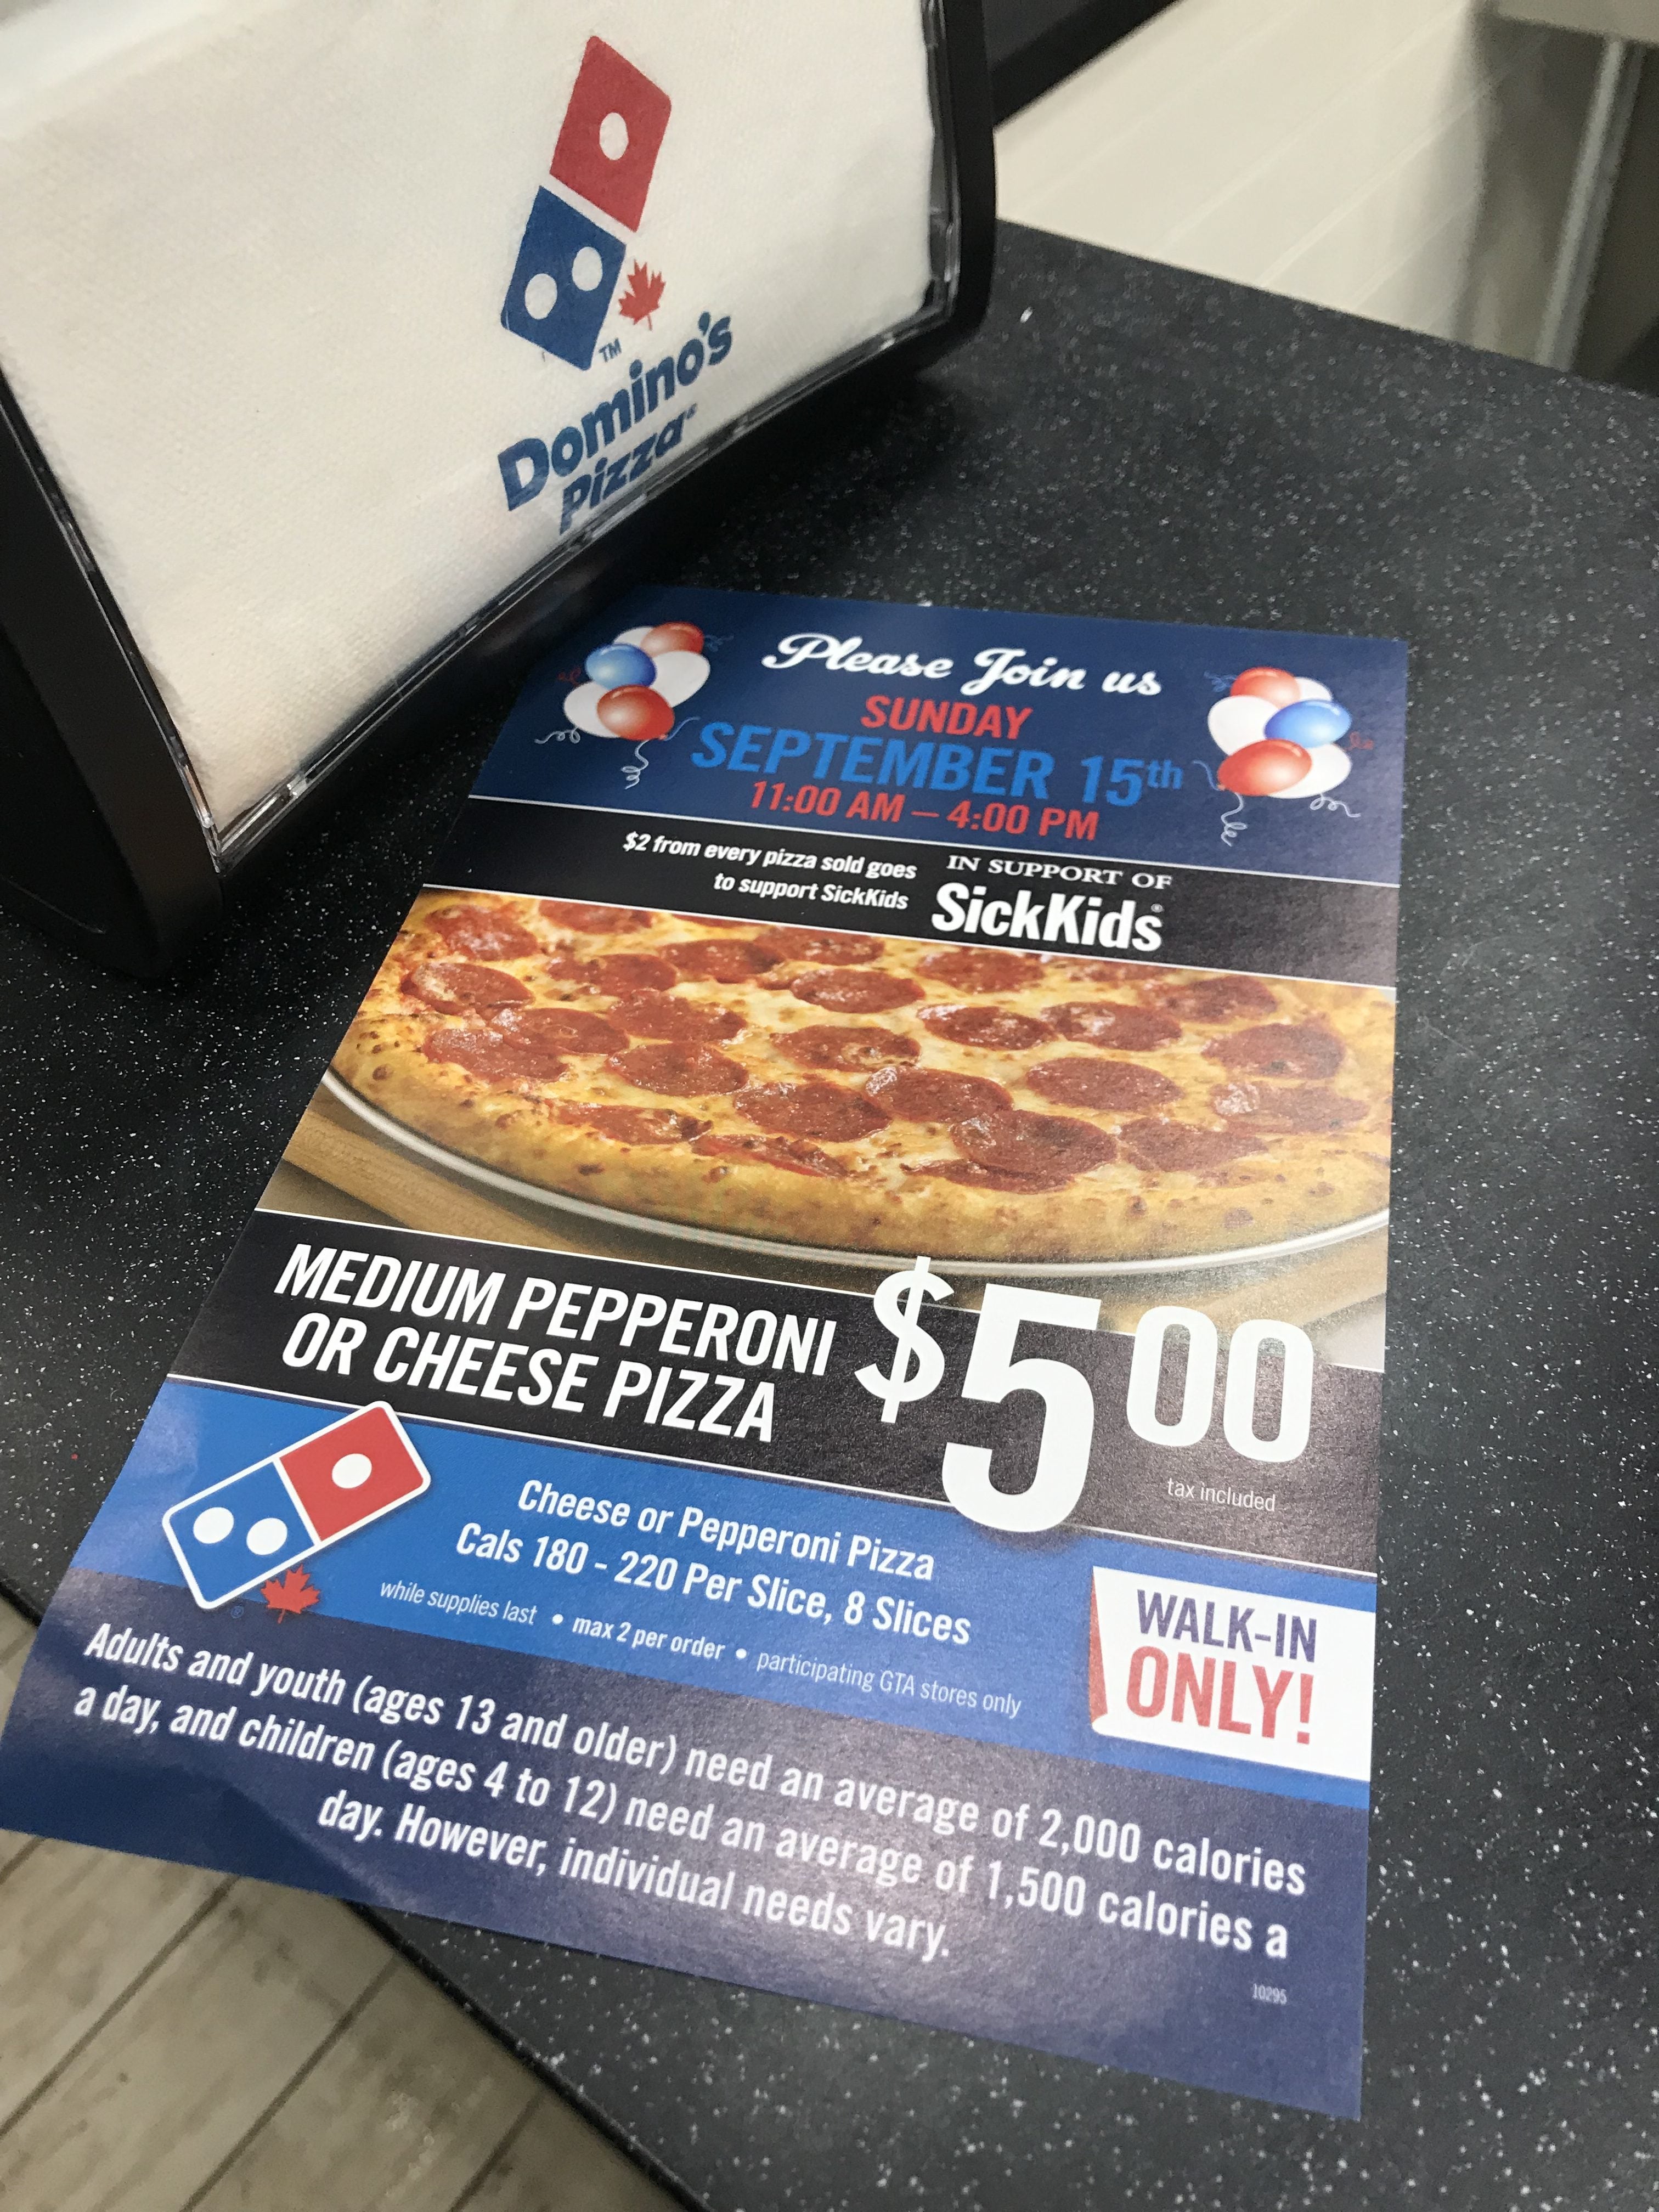 dominos deal 8 dollar pizza not 6